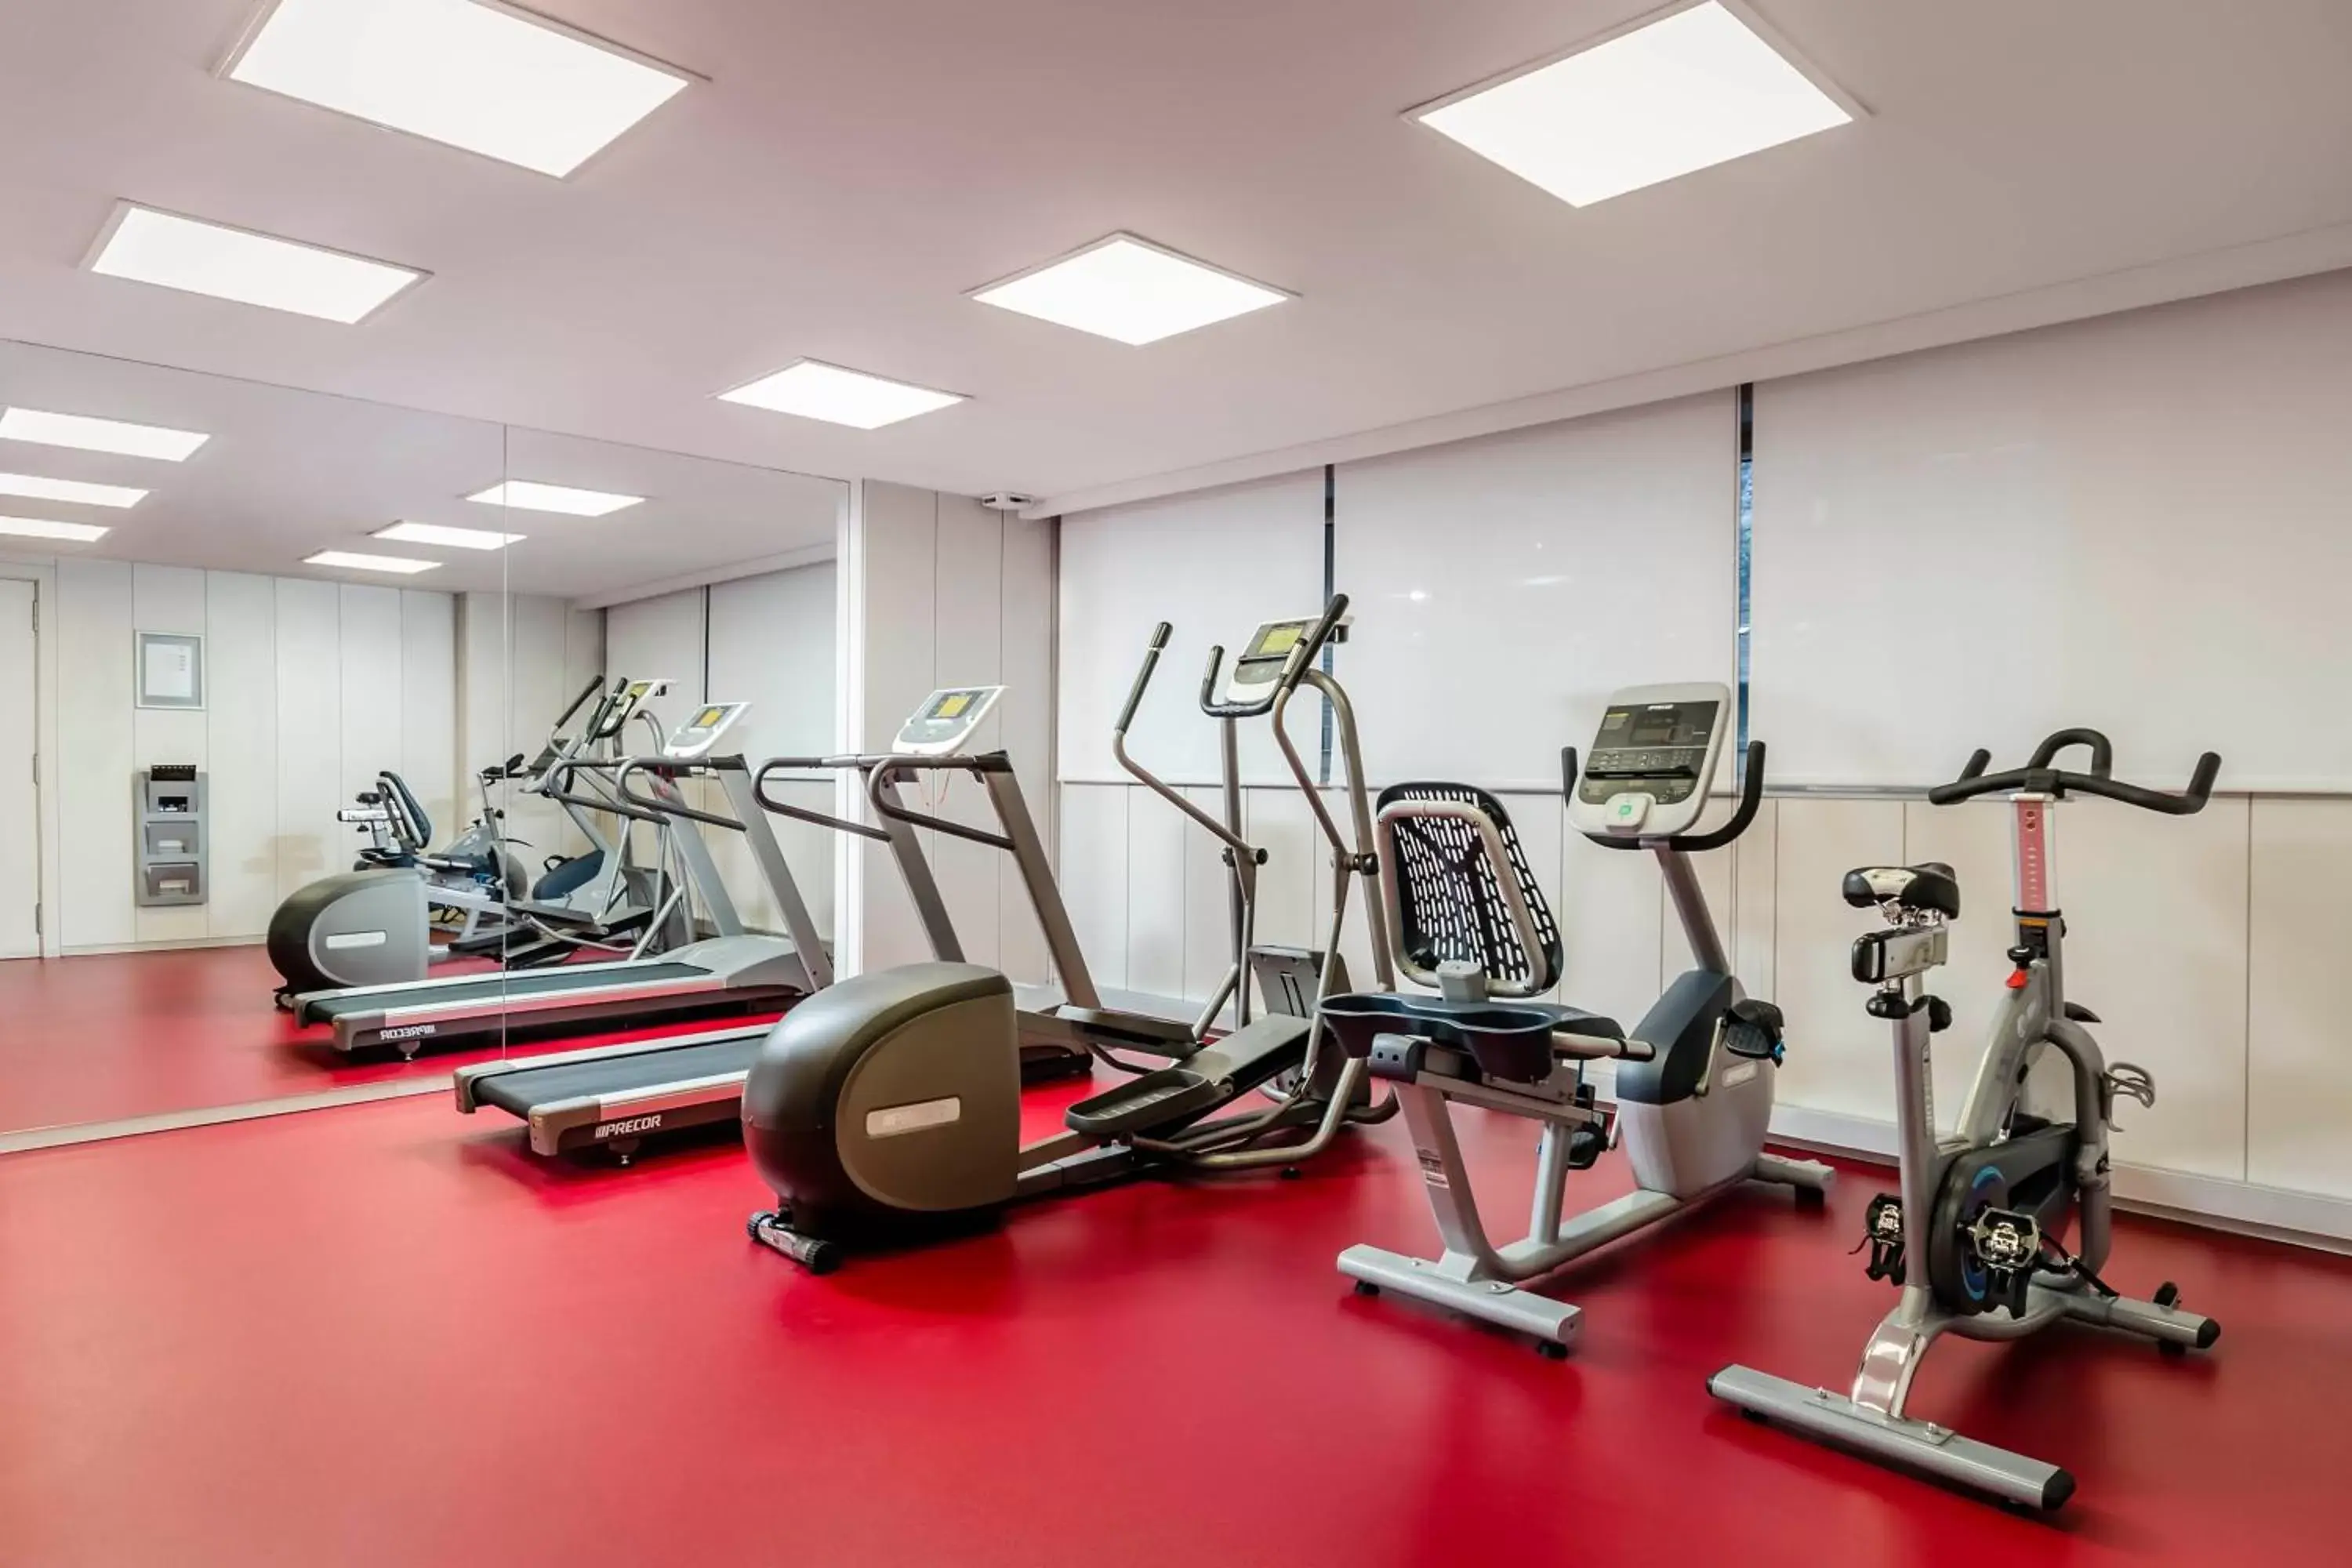 Fitness centre/facilities, Fitness Center/Facilities in Eurostars Andorra